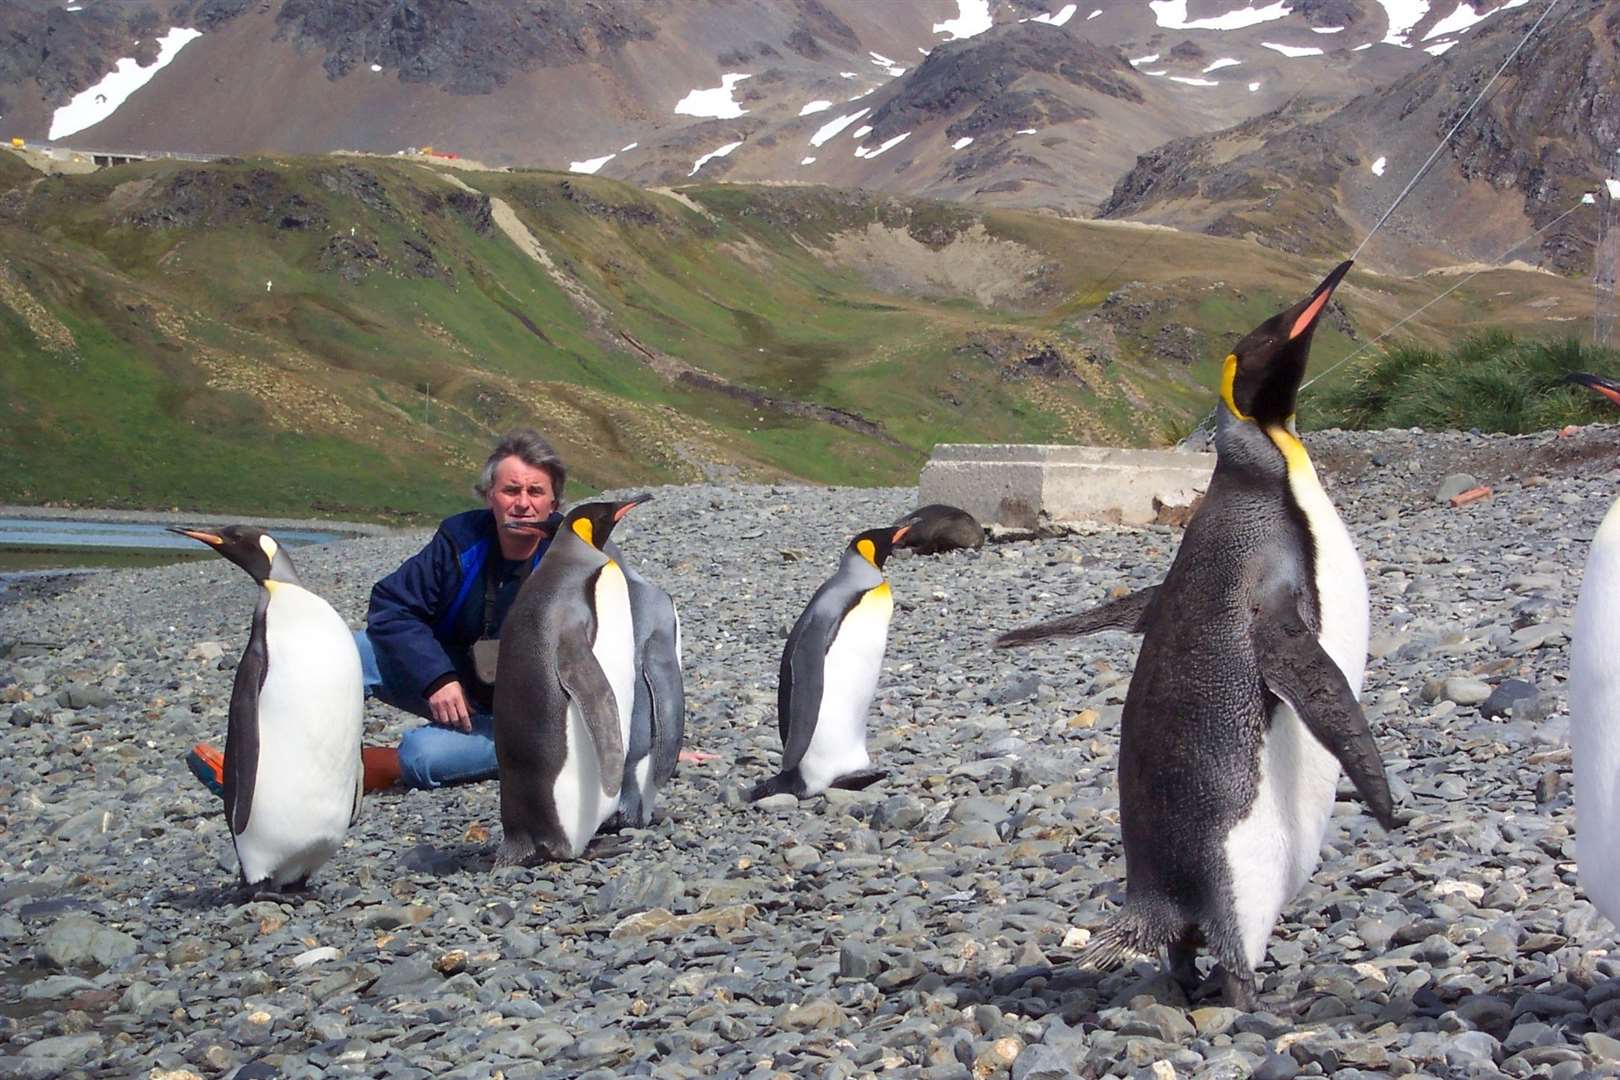 David Virgo in Antarctica, with penguins